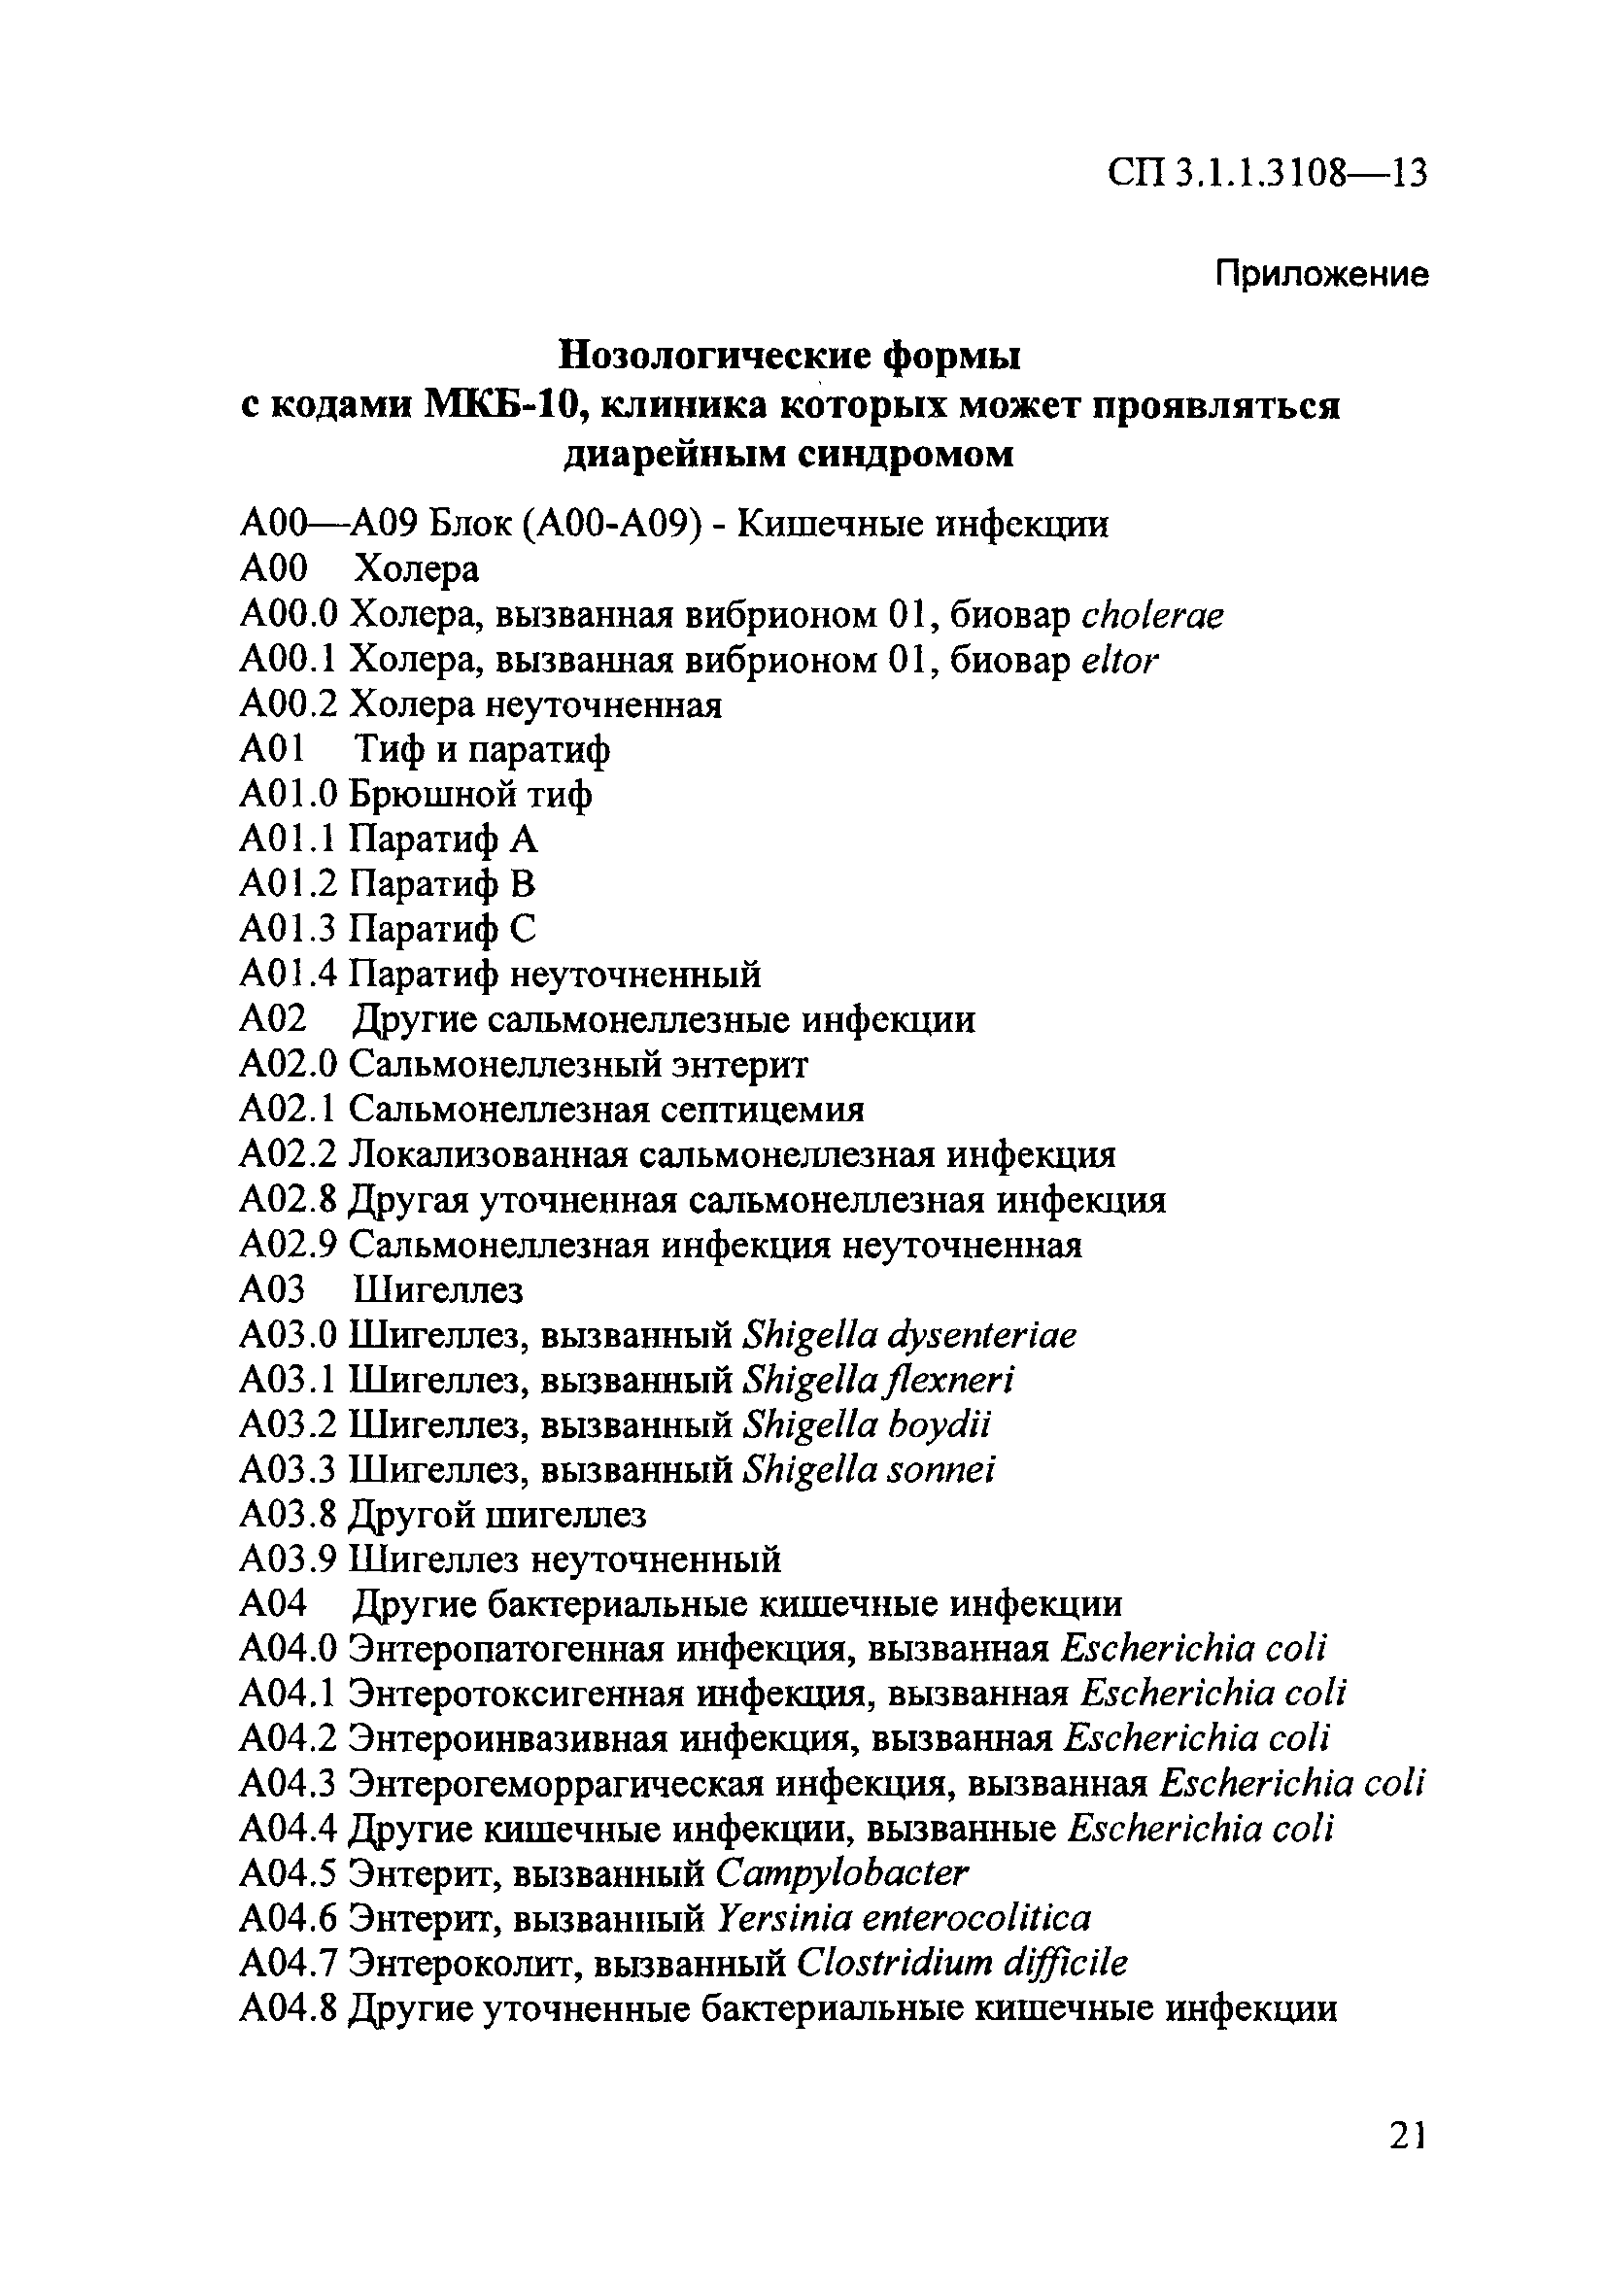 СП 3.1.1.3108-13